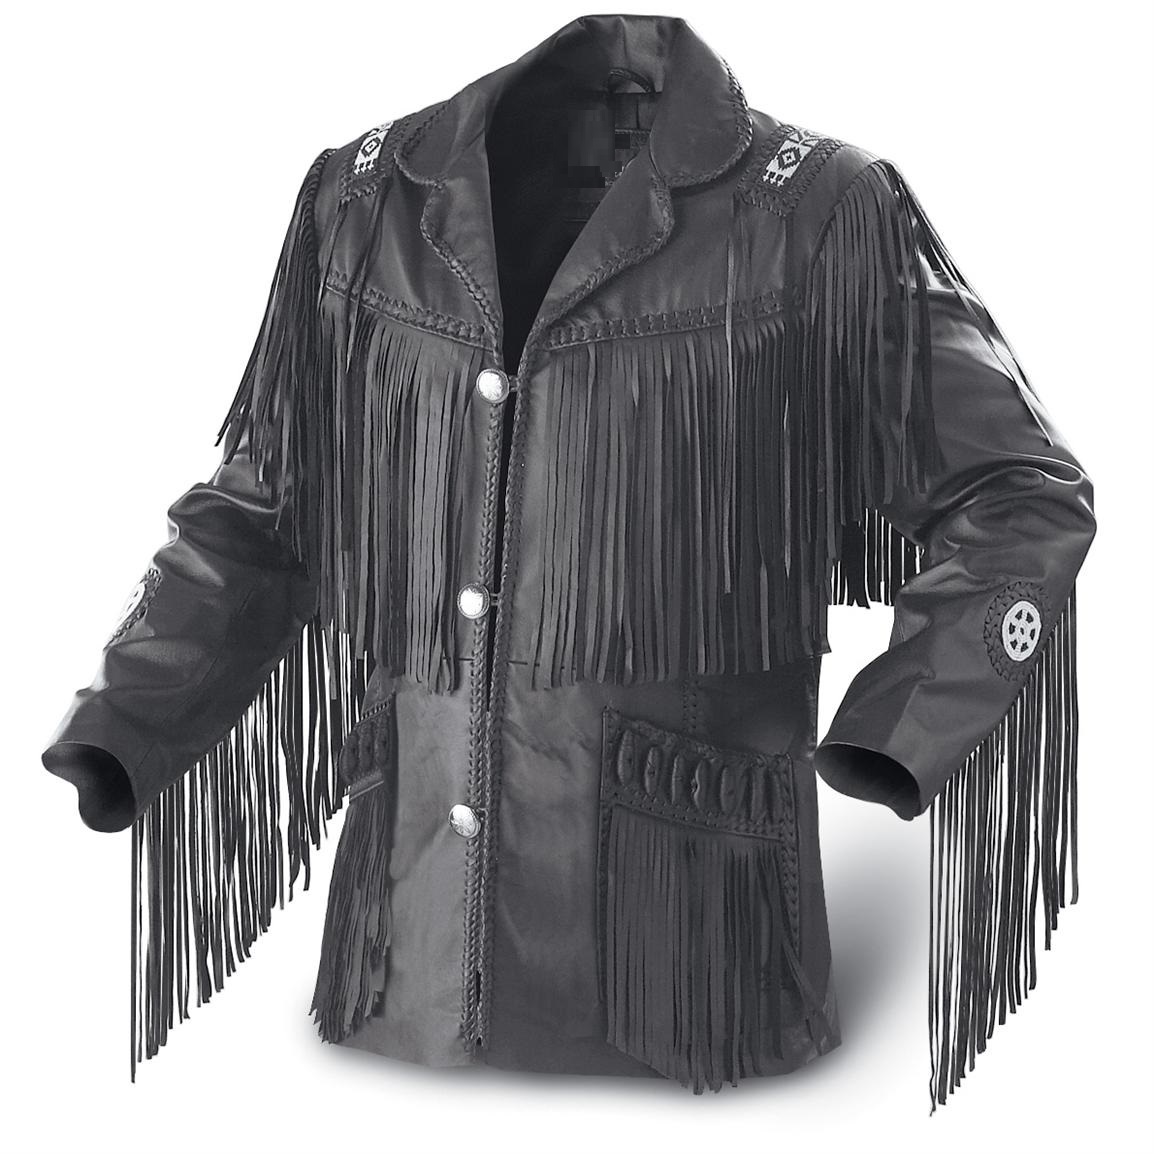 Leather Skin Men Black Western Fringes Cowboy Genuine Real Leather Jacket - $229.99